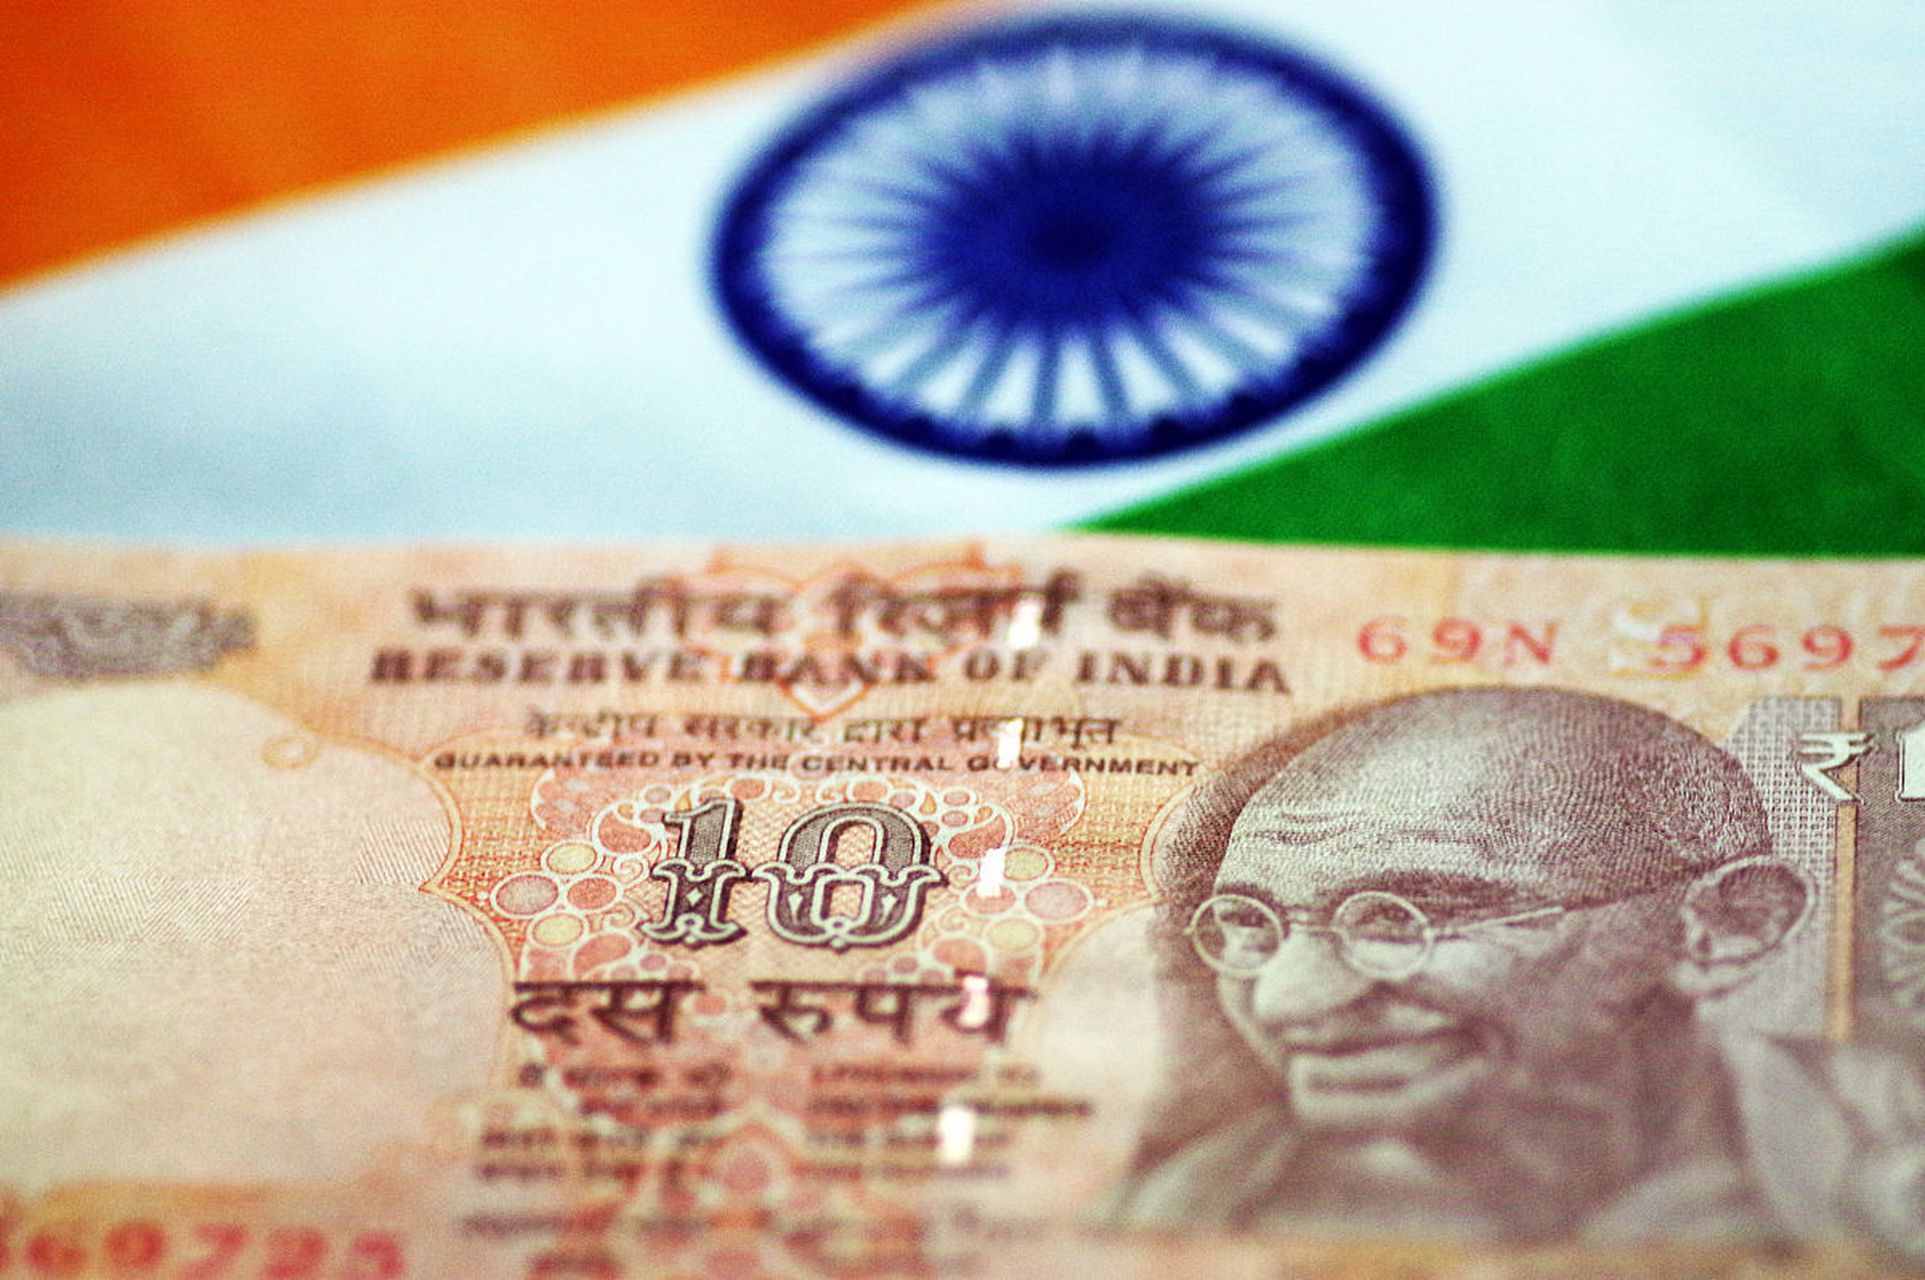 俄方认为持有印度卢比不划算,建议印度以人民币结算双边贸易